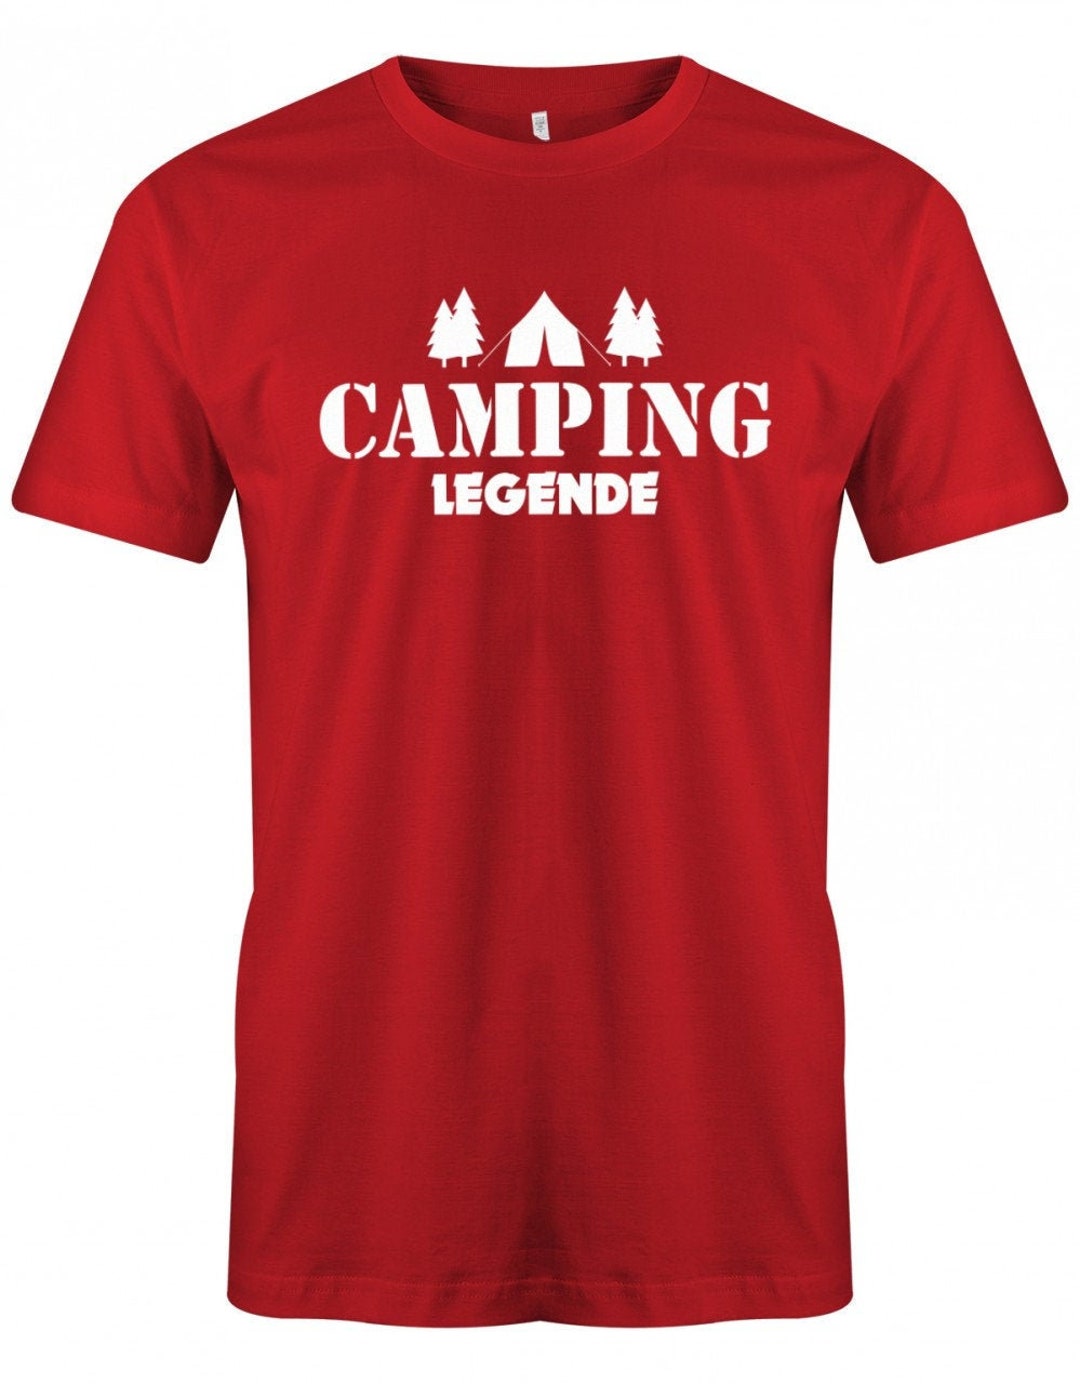 Camping Legende Camper Herren T-shirt - Etsy